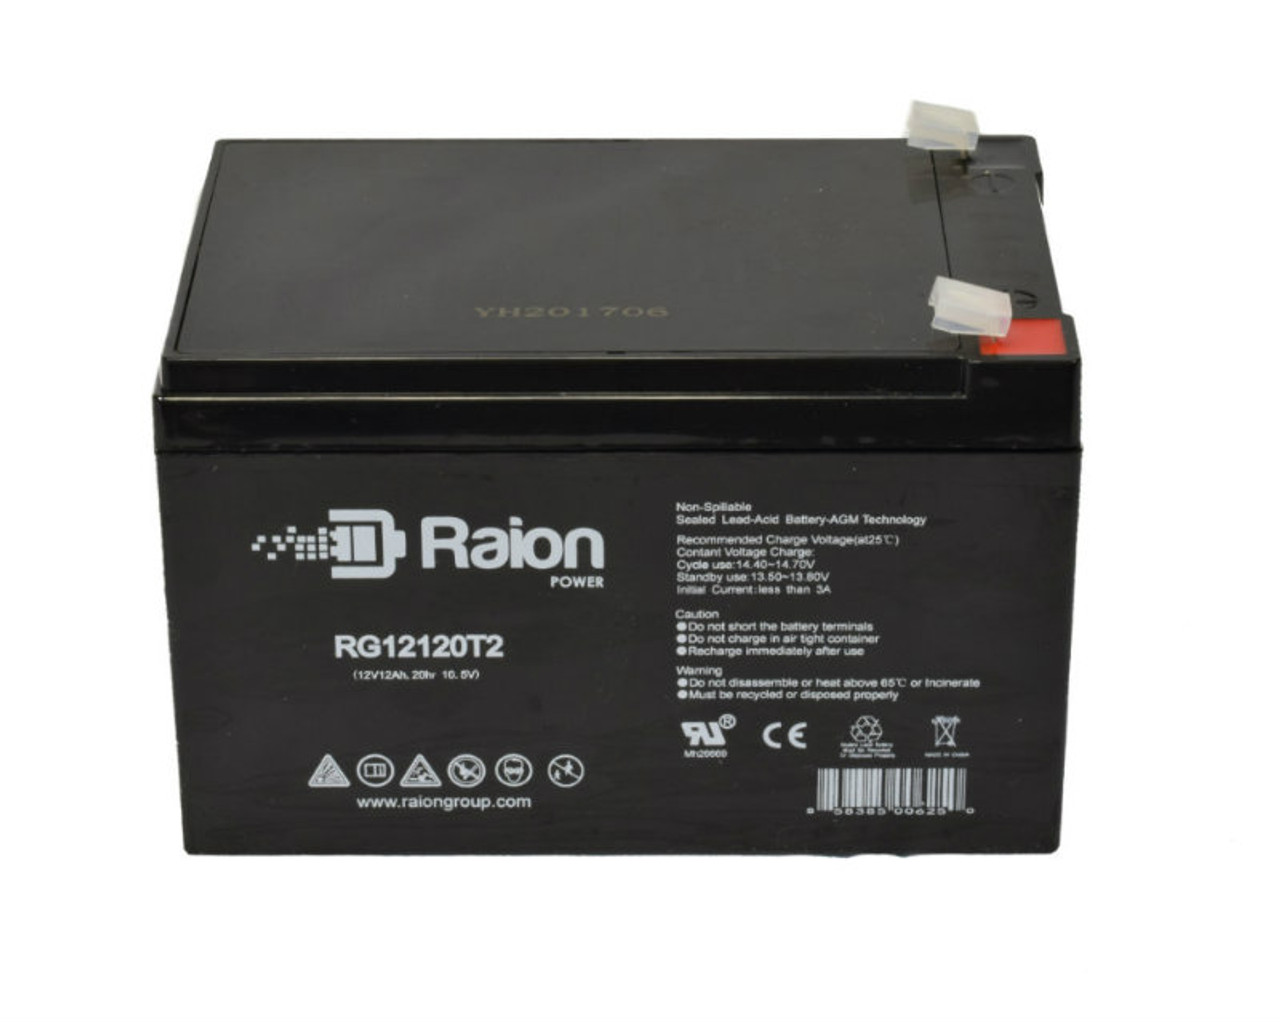 Raion Power RG12120T2 SLA Battery for Sonnenschein 0789552500